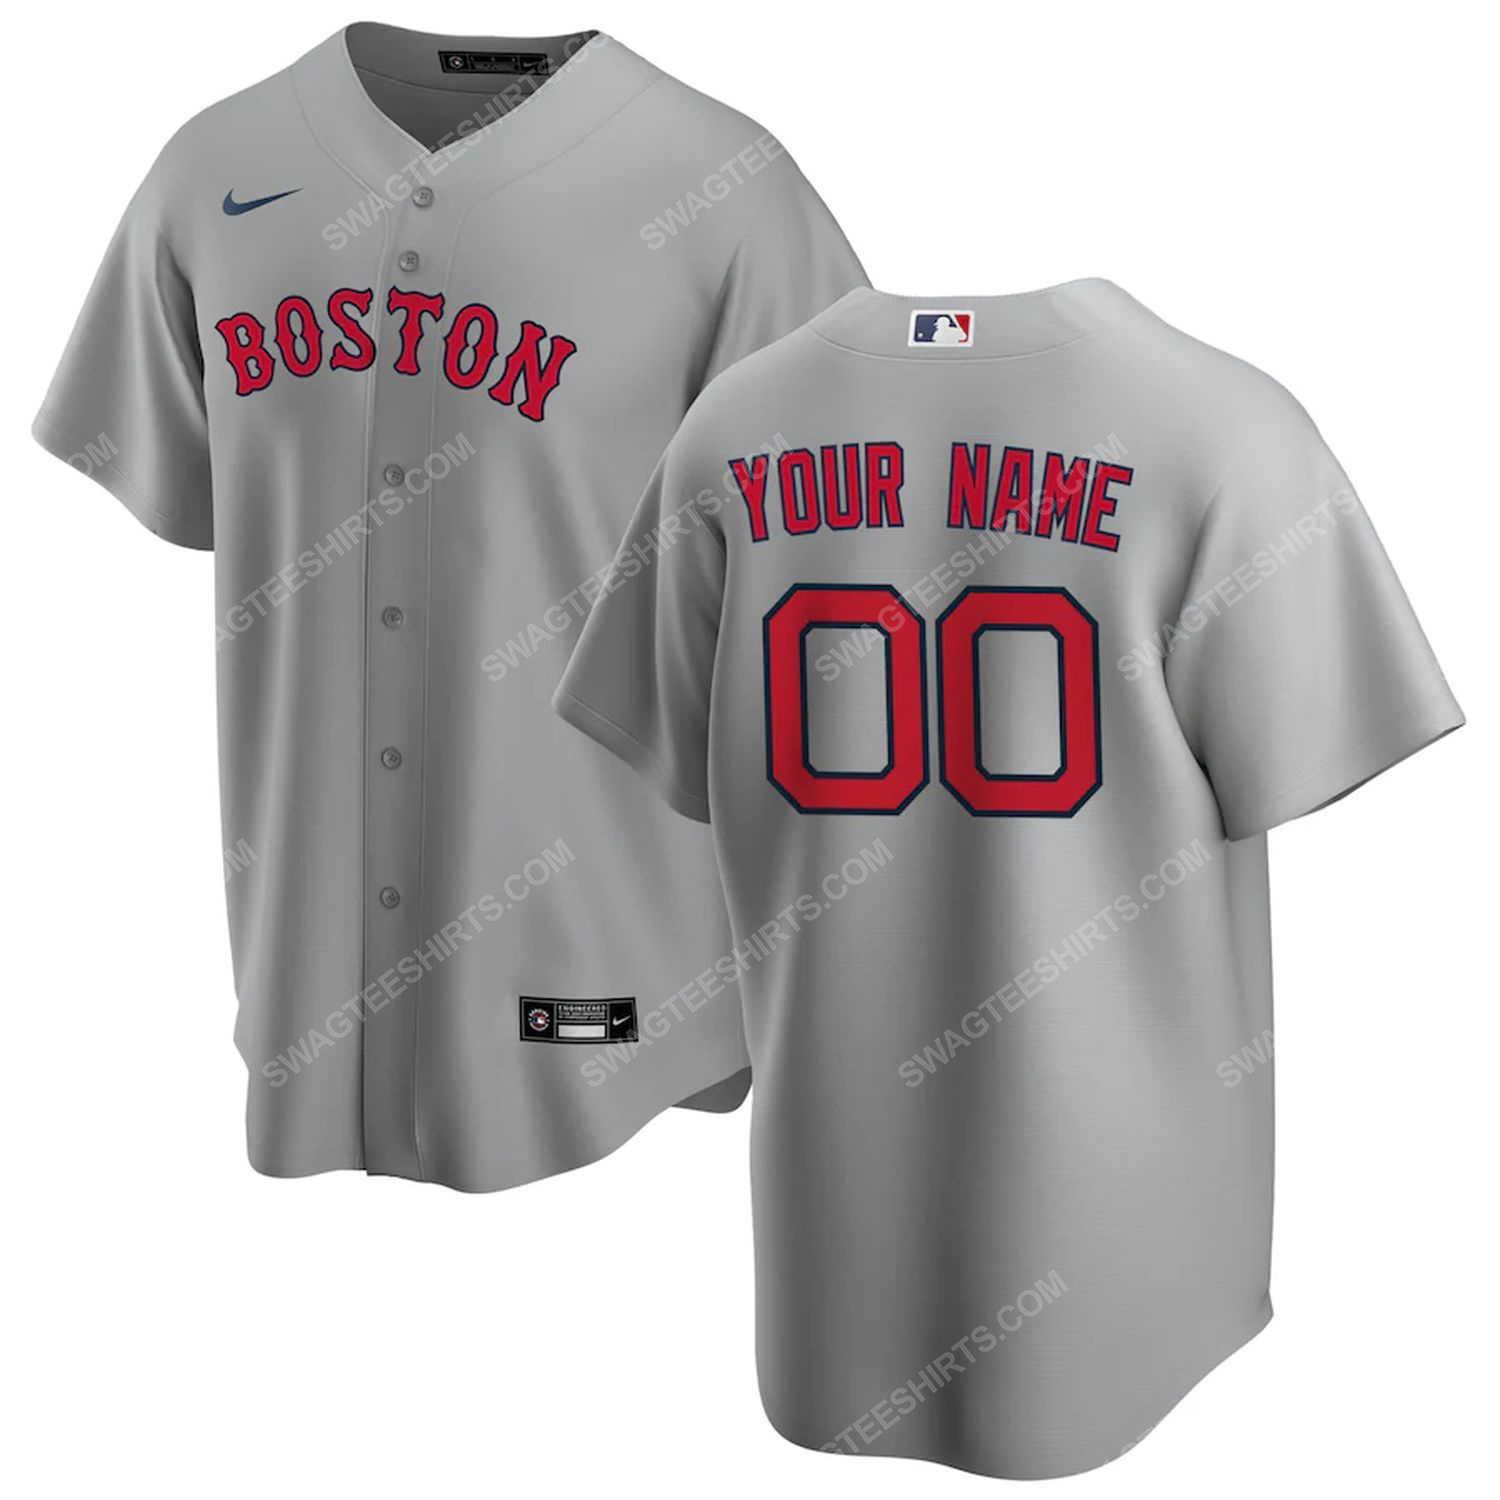 Personalized mlb boston red sox baseball jersey-gray